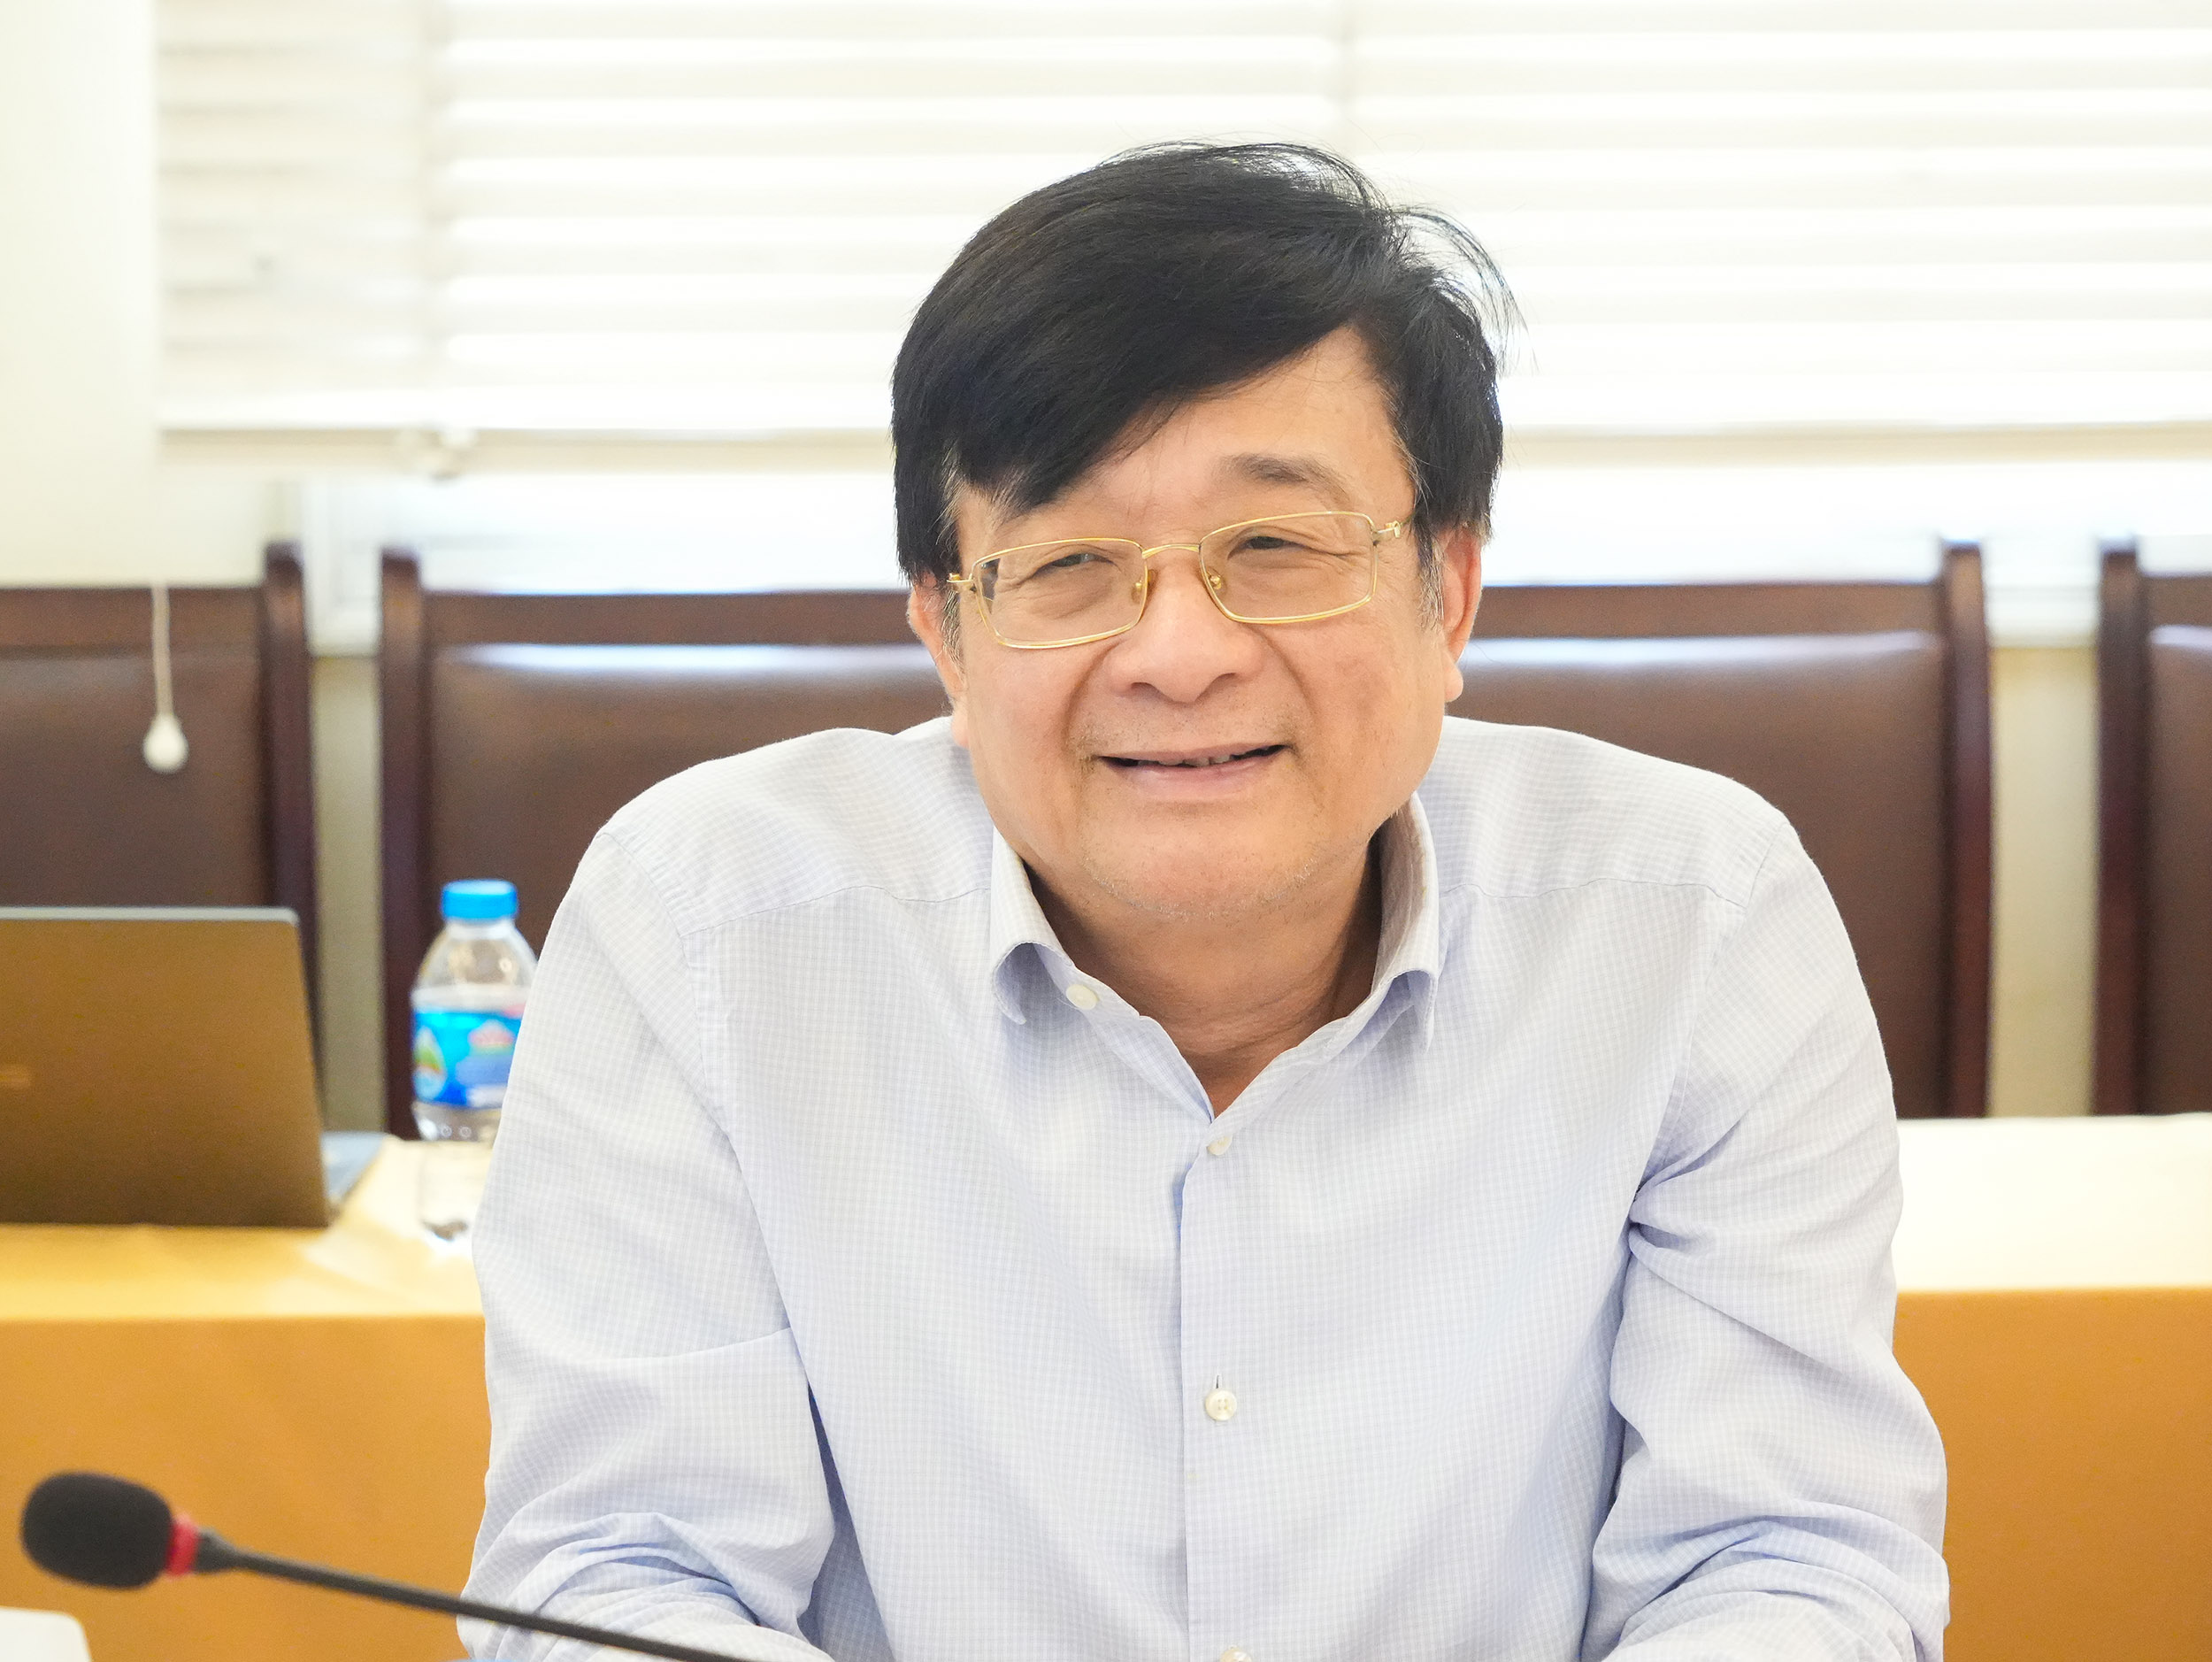 TS Nguyễn Quốc Hùng - Phó Chủ tịch kiêm Tổng Thư ký Hiệp hội Ngân hàng Việt Nam